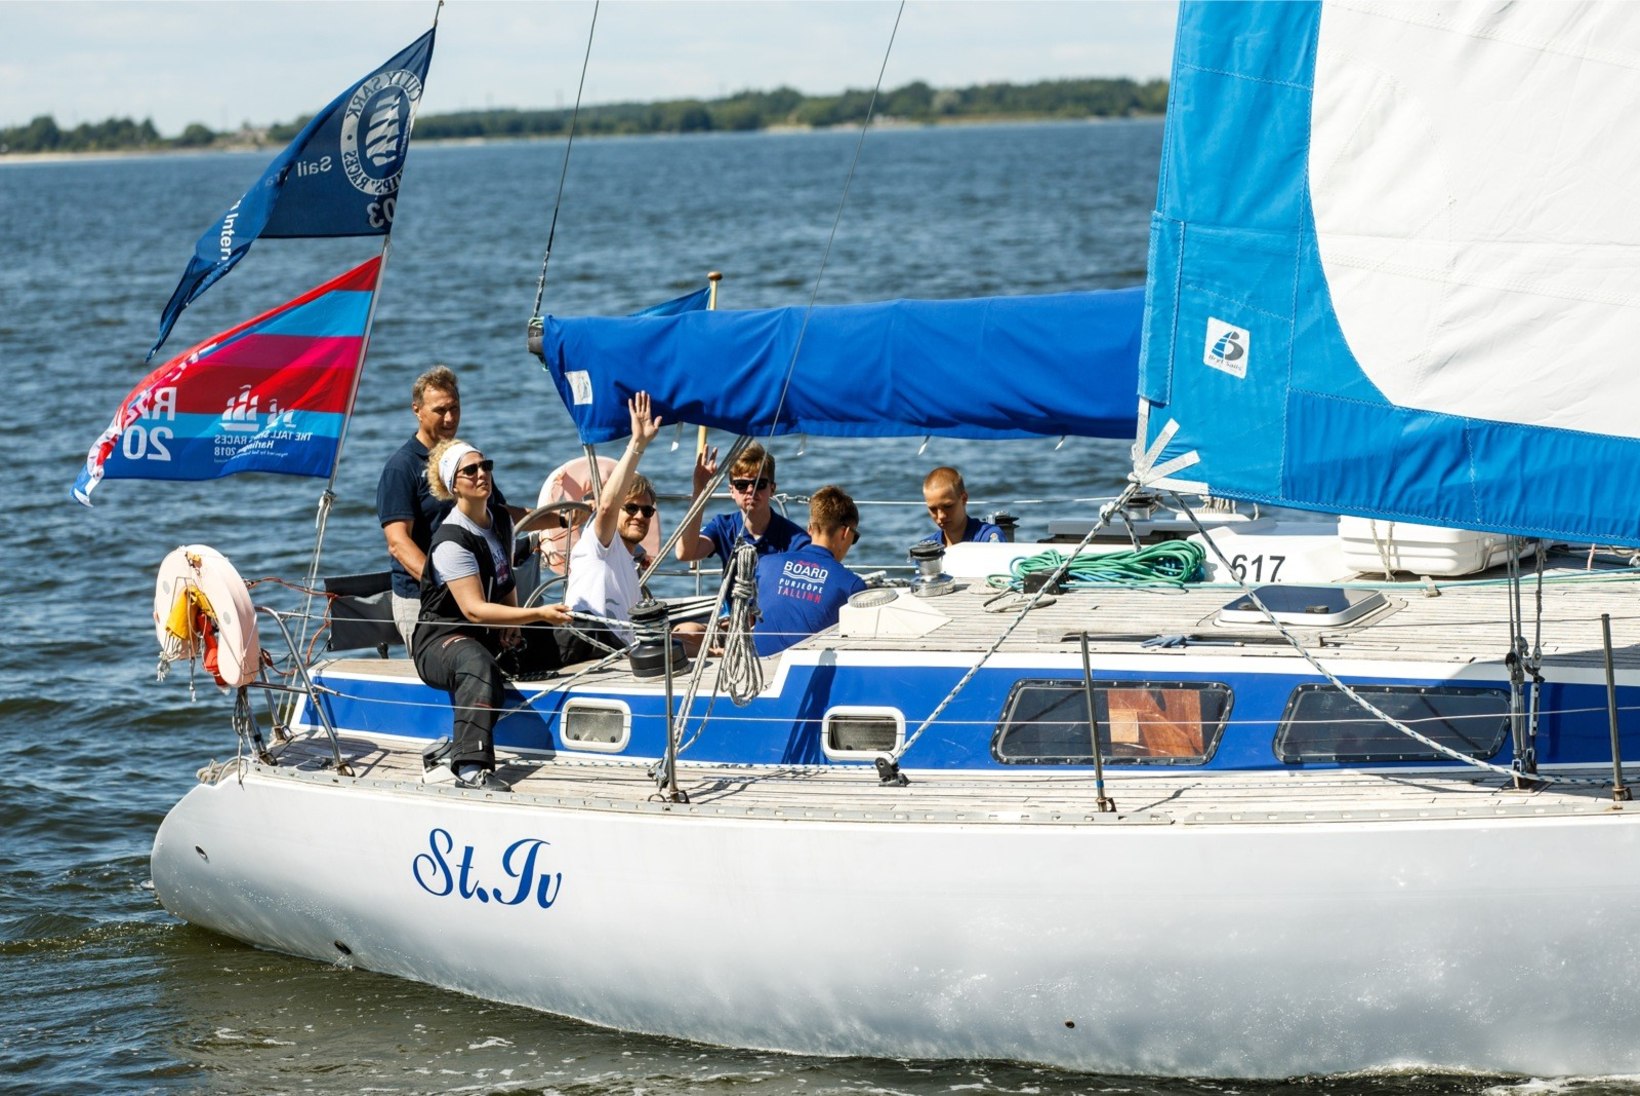 GALERII | Tallinn võõrustab järgmisel aastal maailma suurimat purjelaevastikku